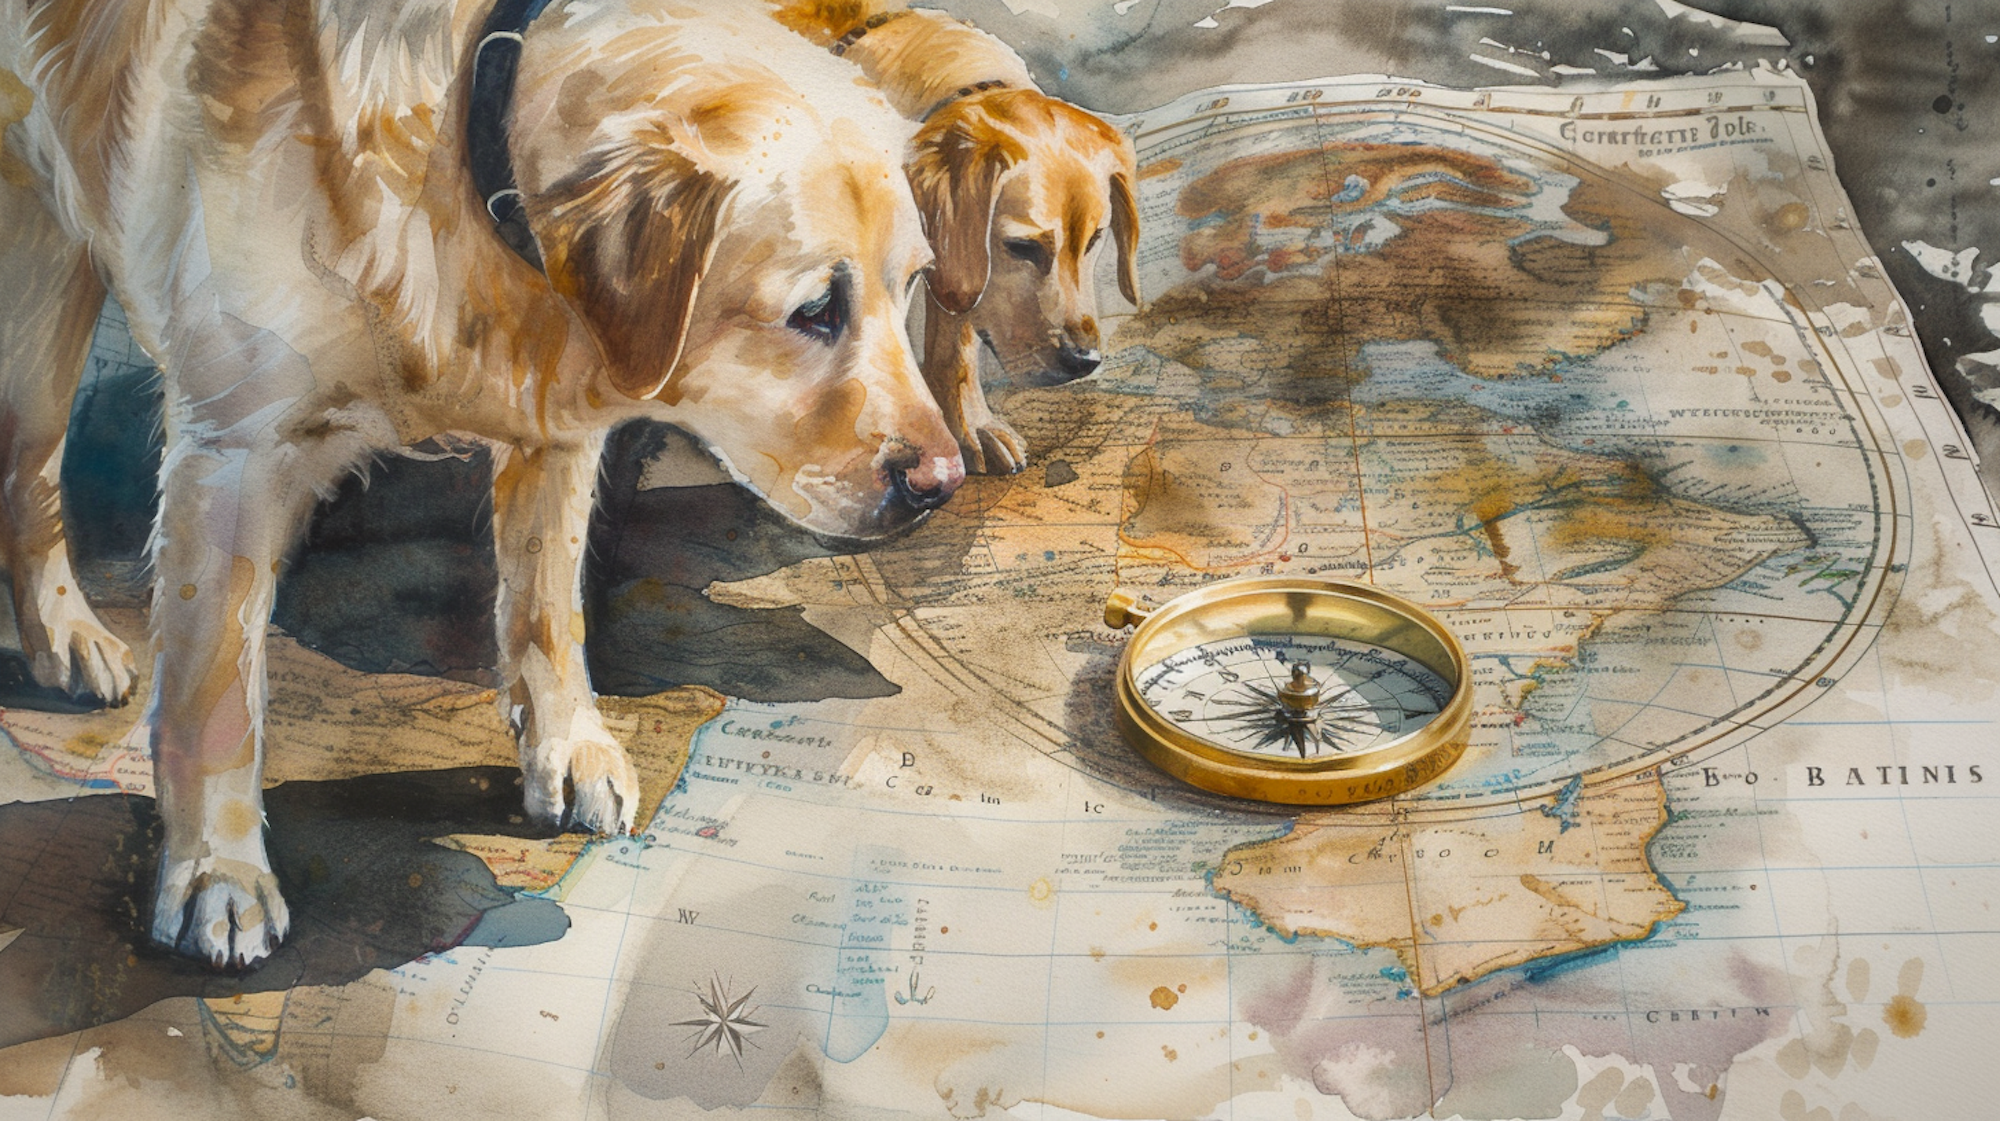 Illustration: Zwei Hunde laufen auf einer Landkarte und betrachten einen Kompass.